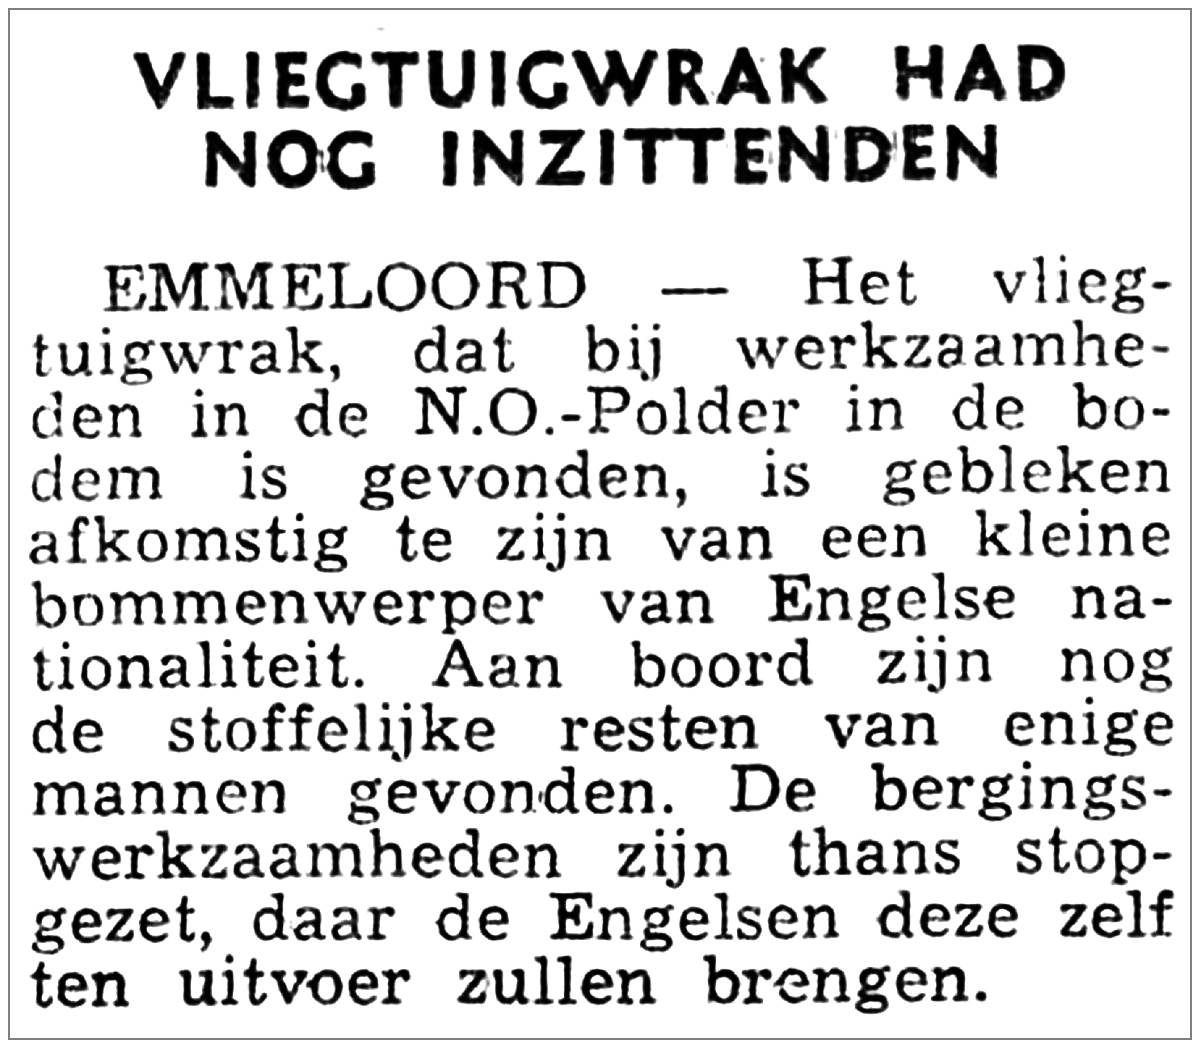 02 Sep 1952 - Overijssels Dagblad - Salvage English bomber - Urkerweg